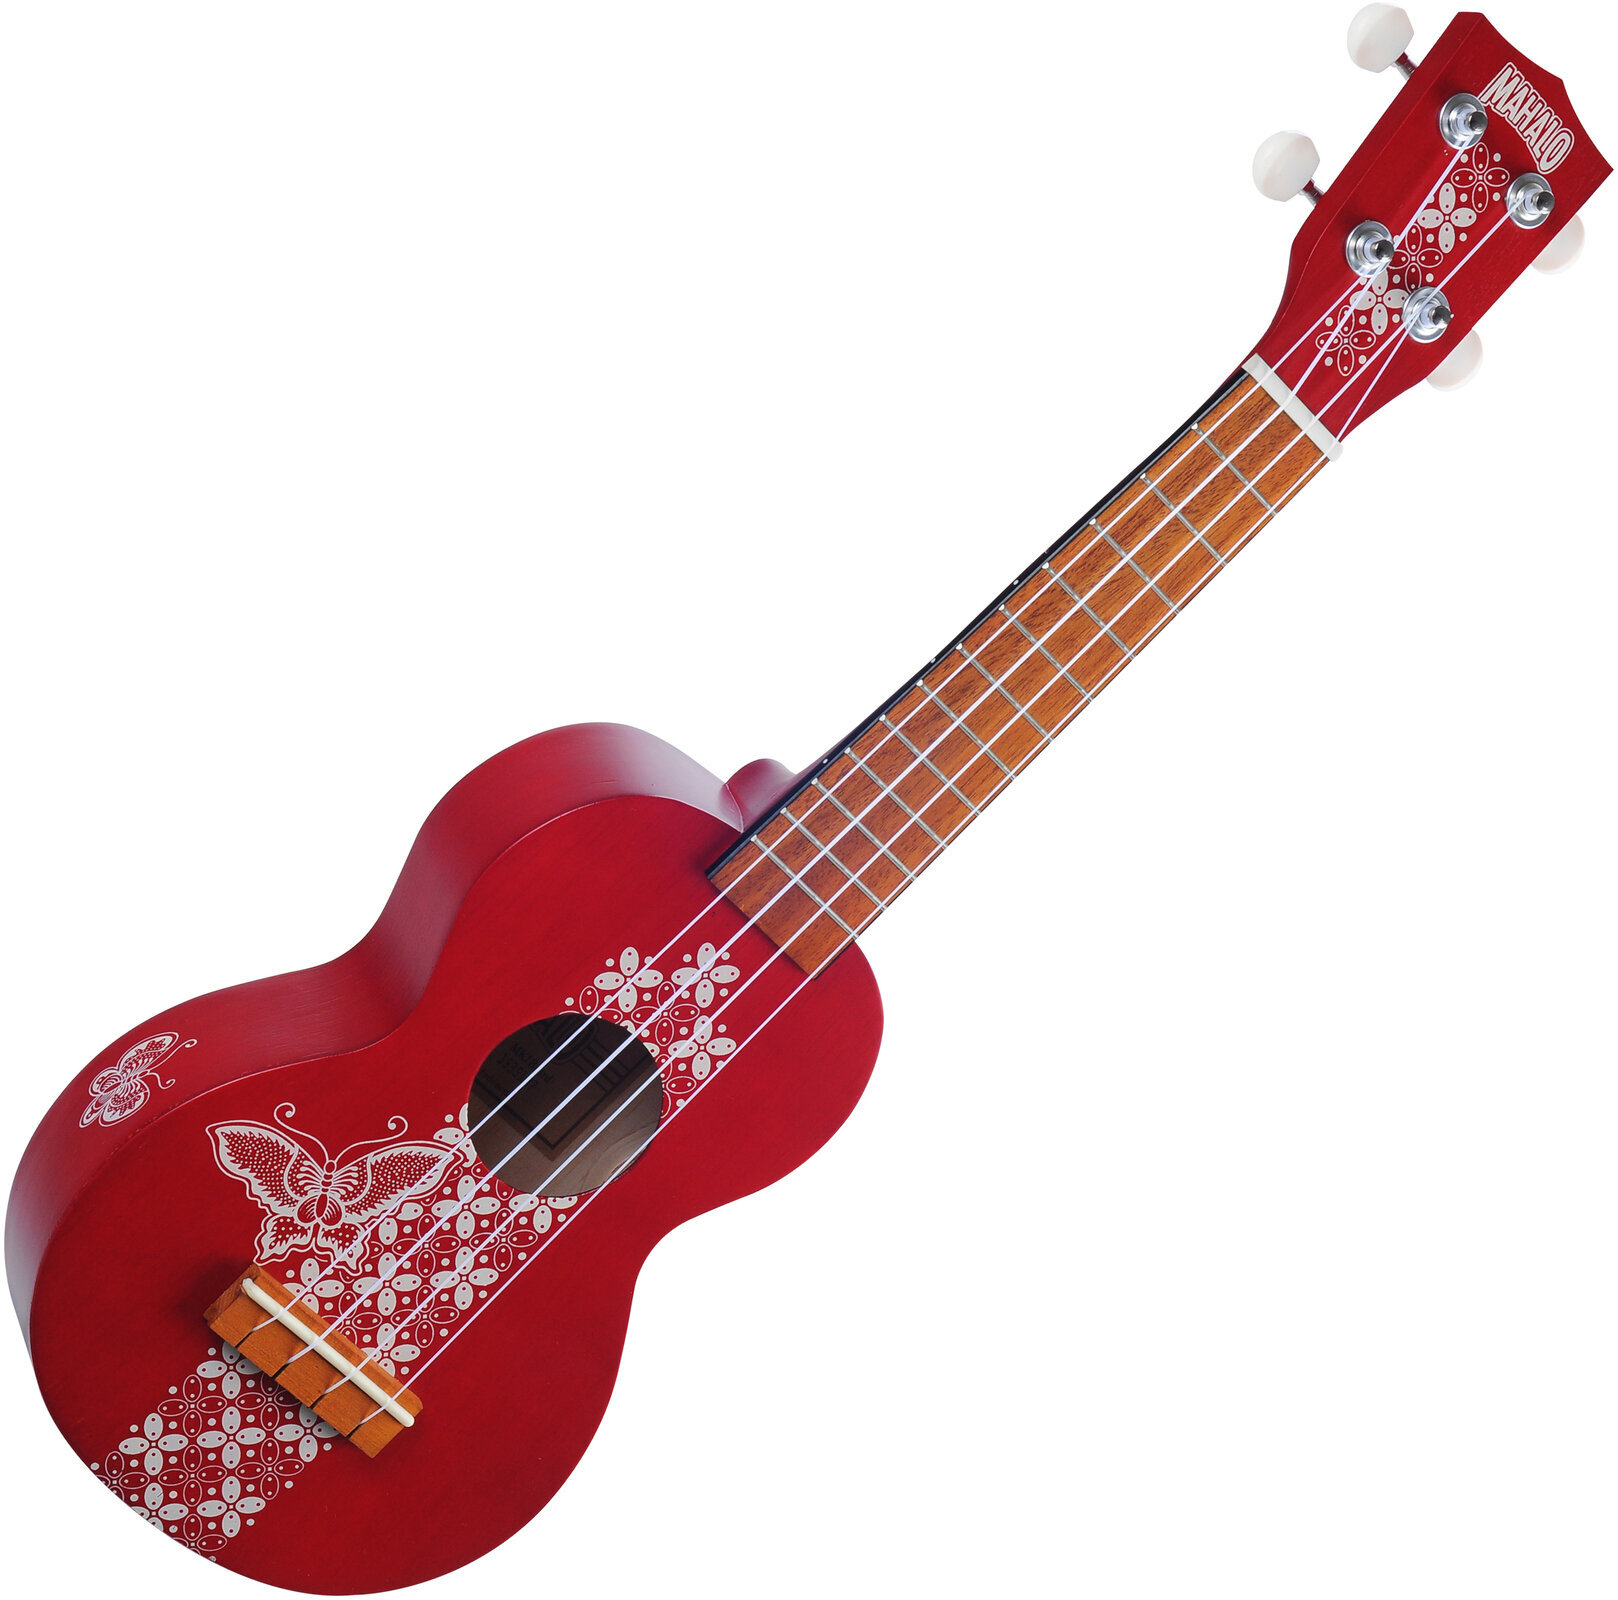 Soprano ukulele Mahalo MK1BA Soprano ukulele Batik Transparent Red